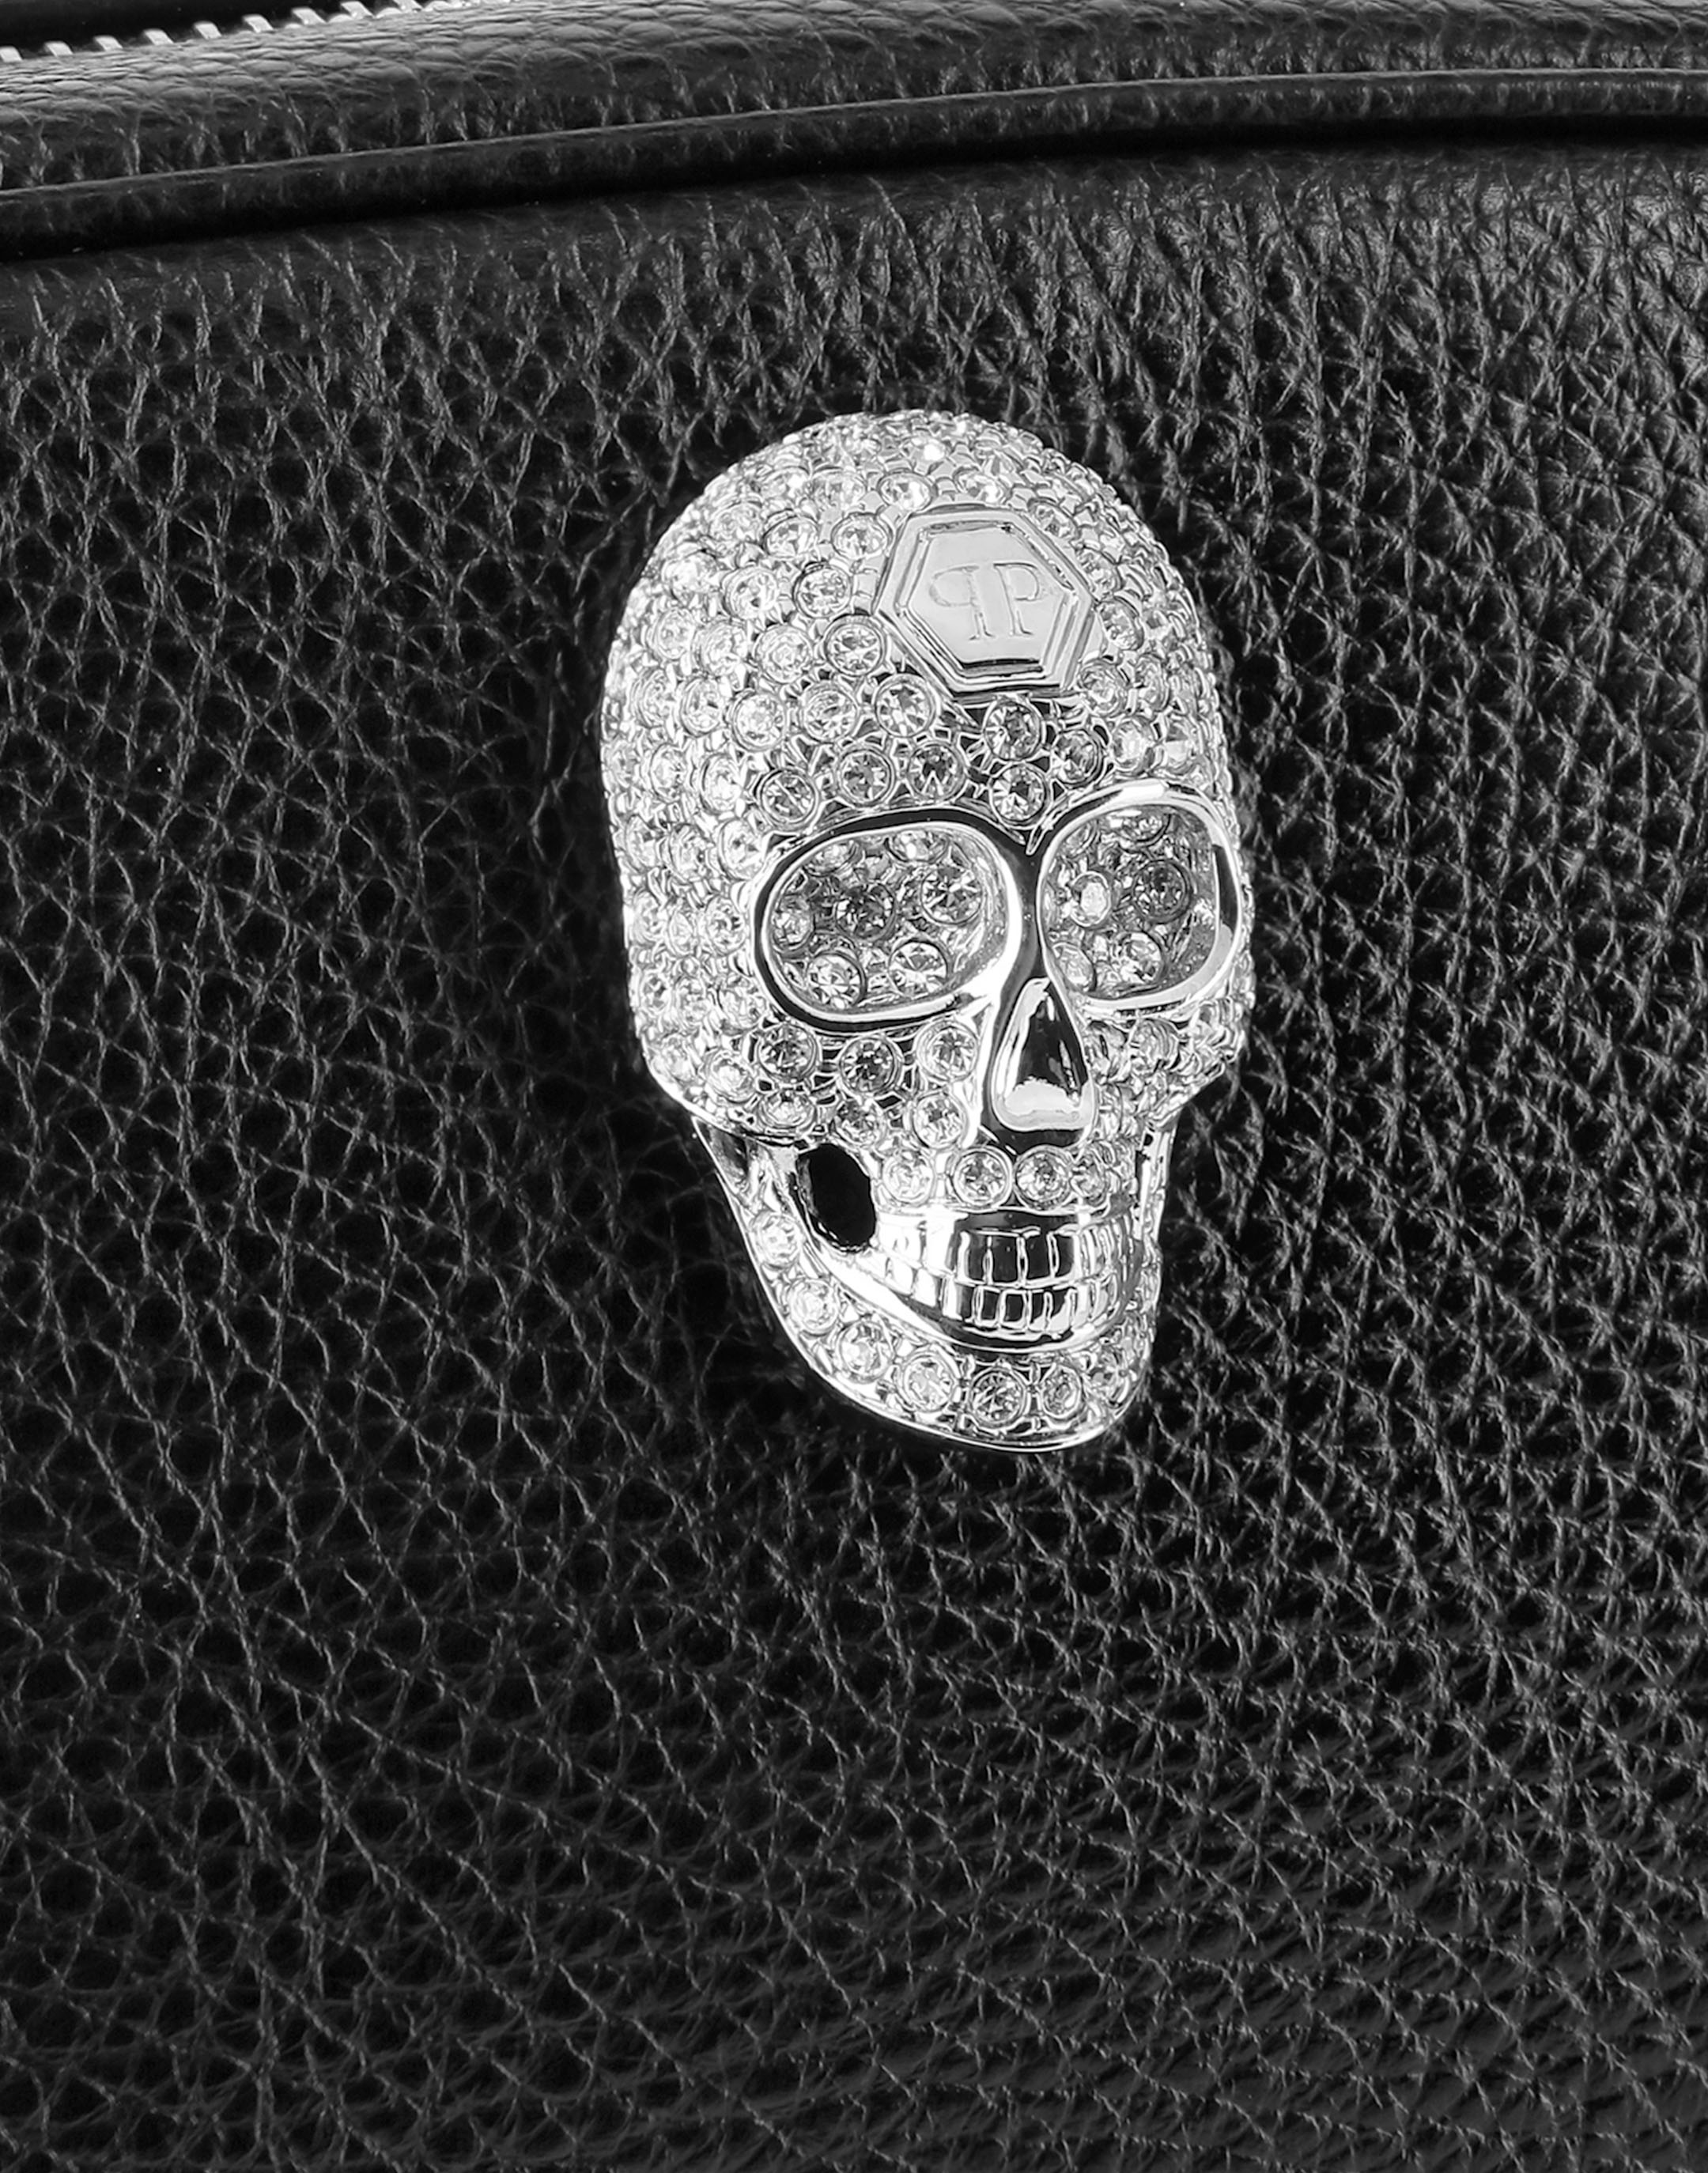 Studded Skull Hobo Bag in Vinyl Material – www.